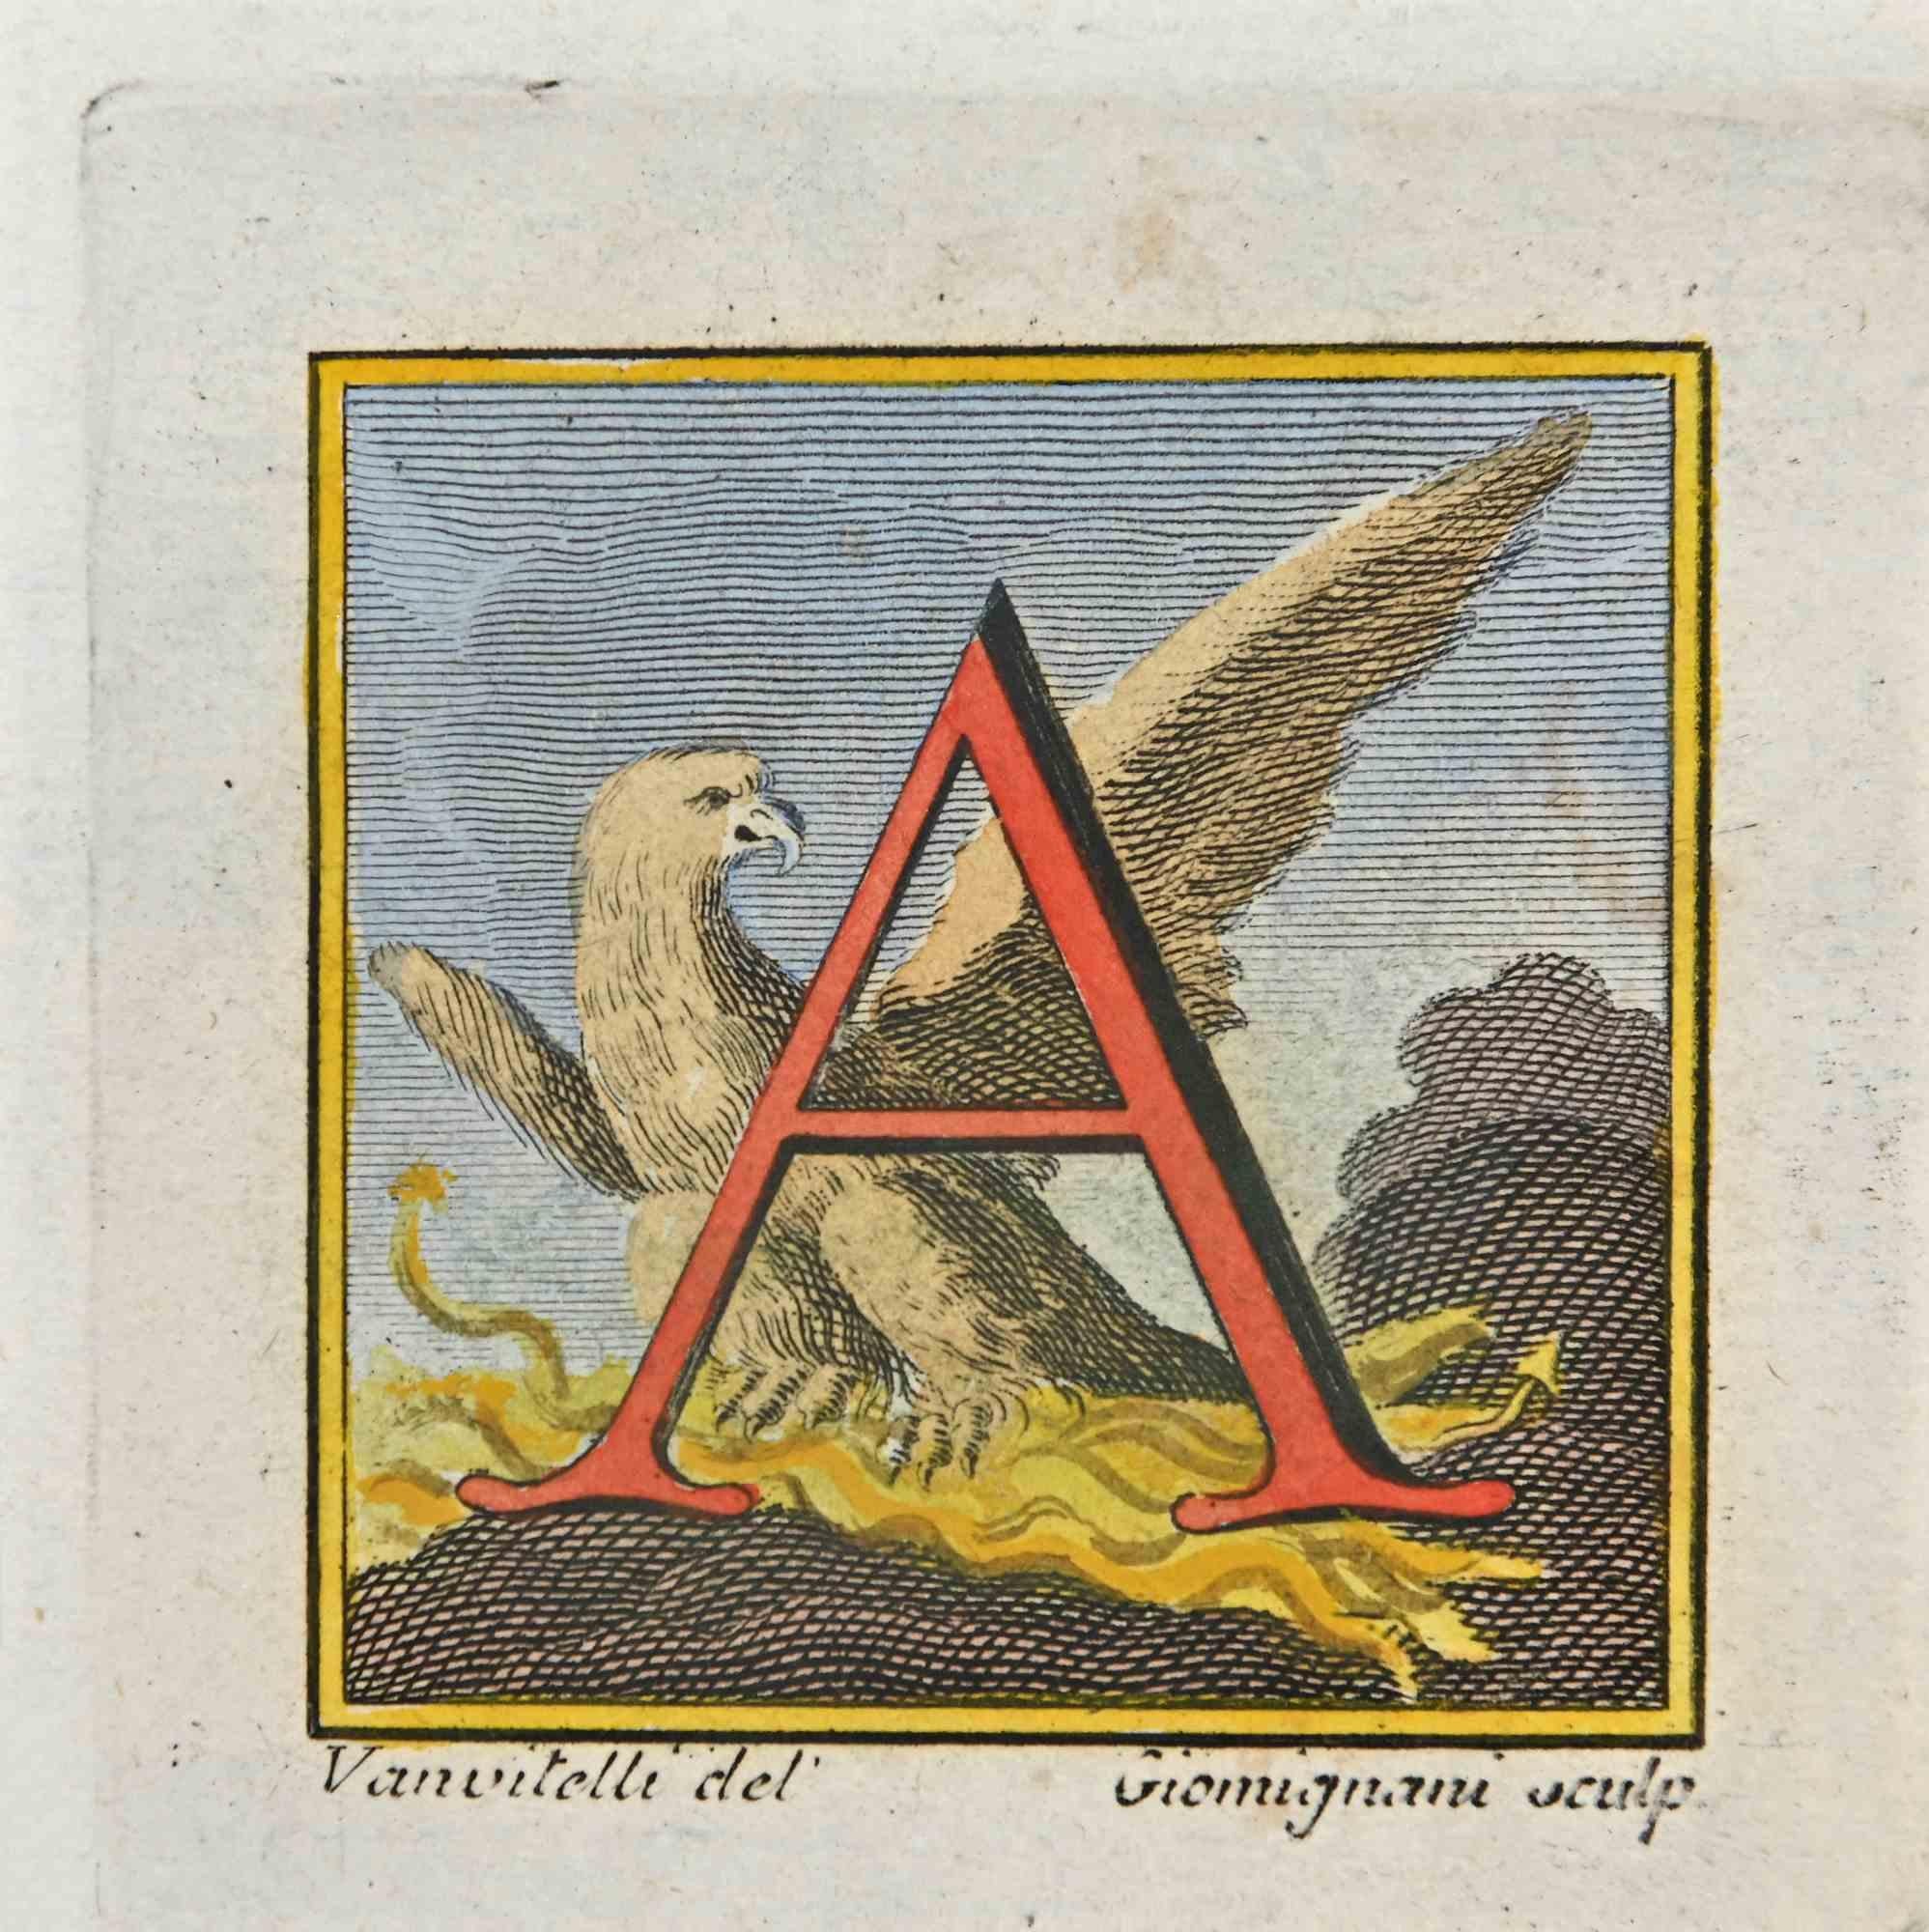 Lettre de l'alphabet A,  de la série "Antiquités d'Herculanum", est une gravure sur papier réalisée par Luigi Vanvitelli au 18ème siècle.

Signé sur la plaque.

Bonnes conditions.

La gravure appartient à la suite d'estampes "Antiquités d'Herculanum